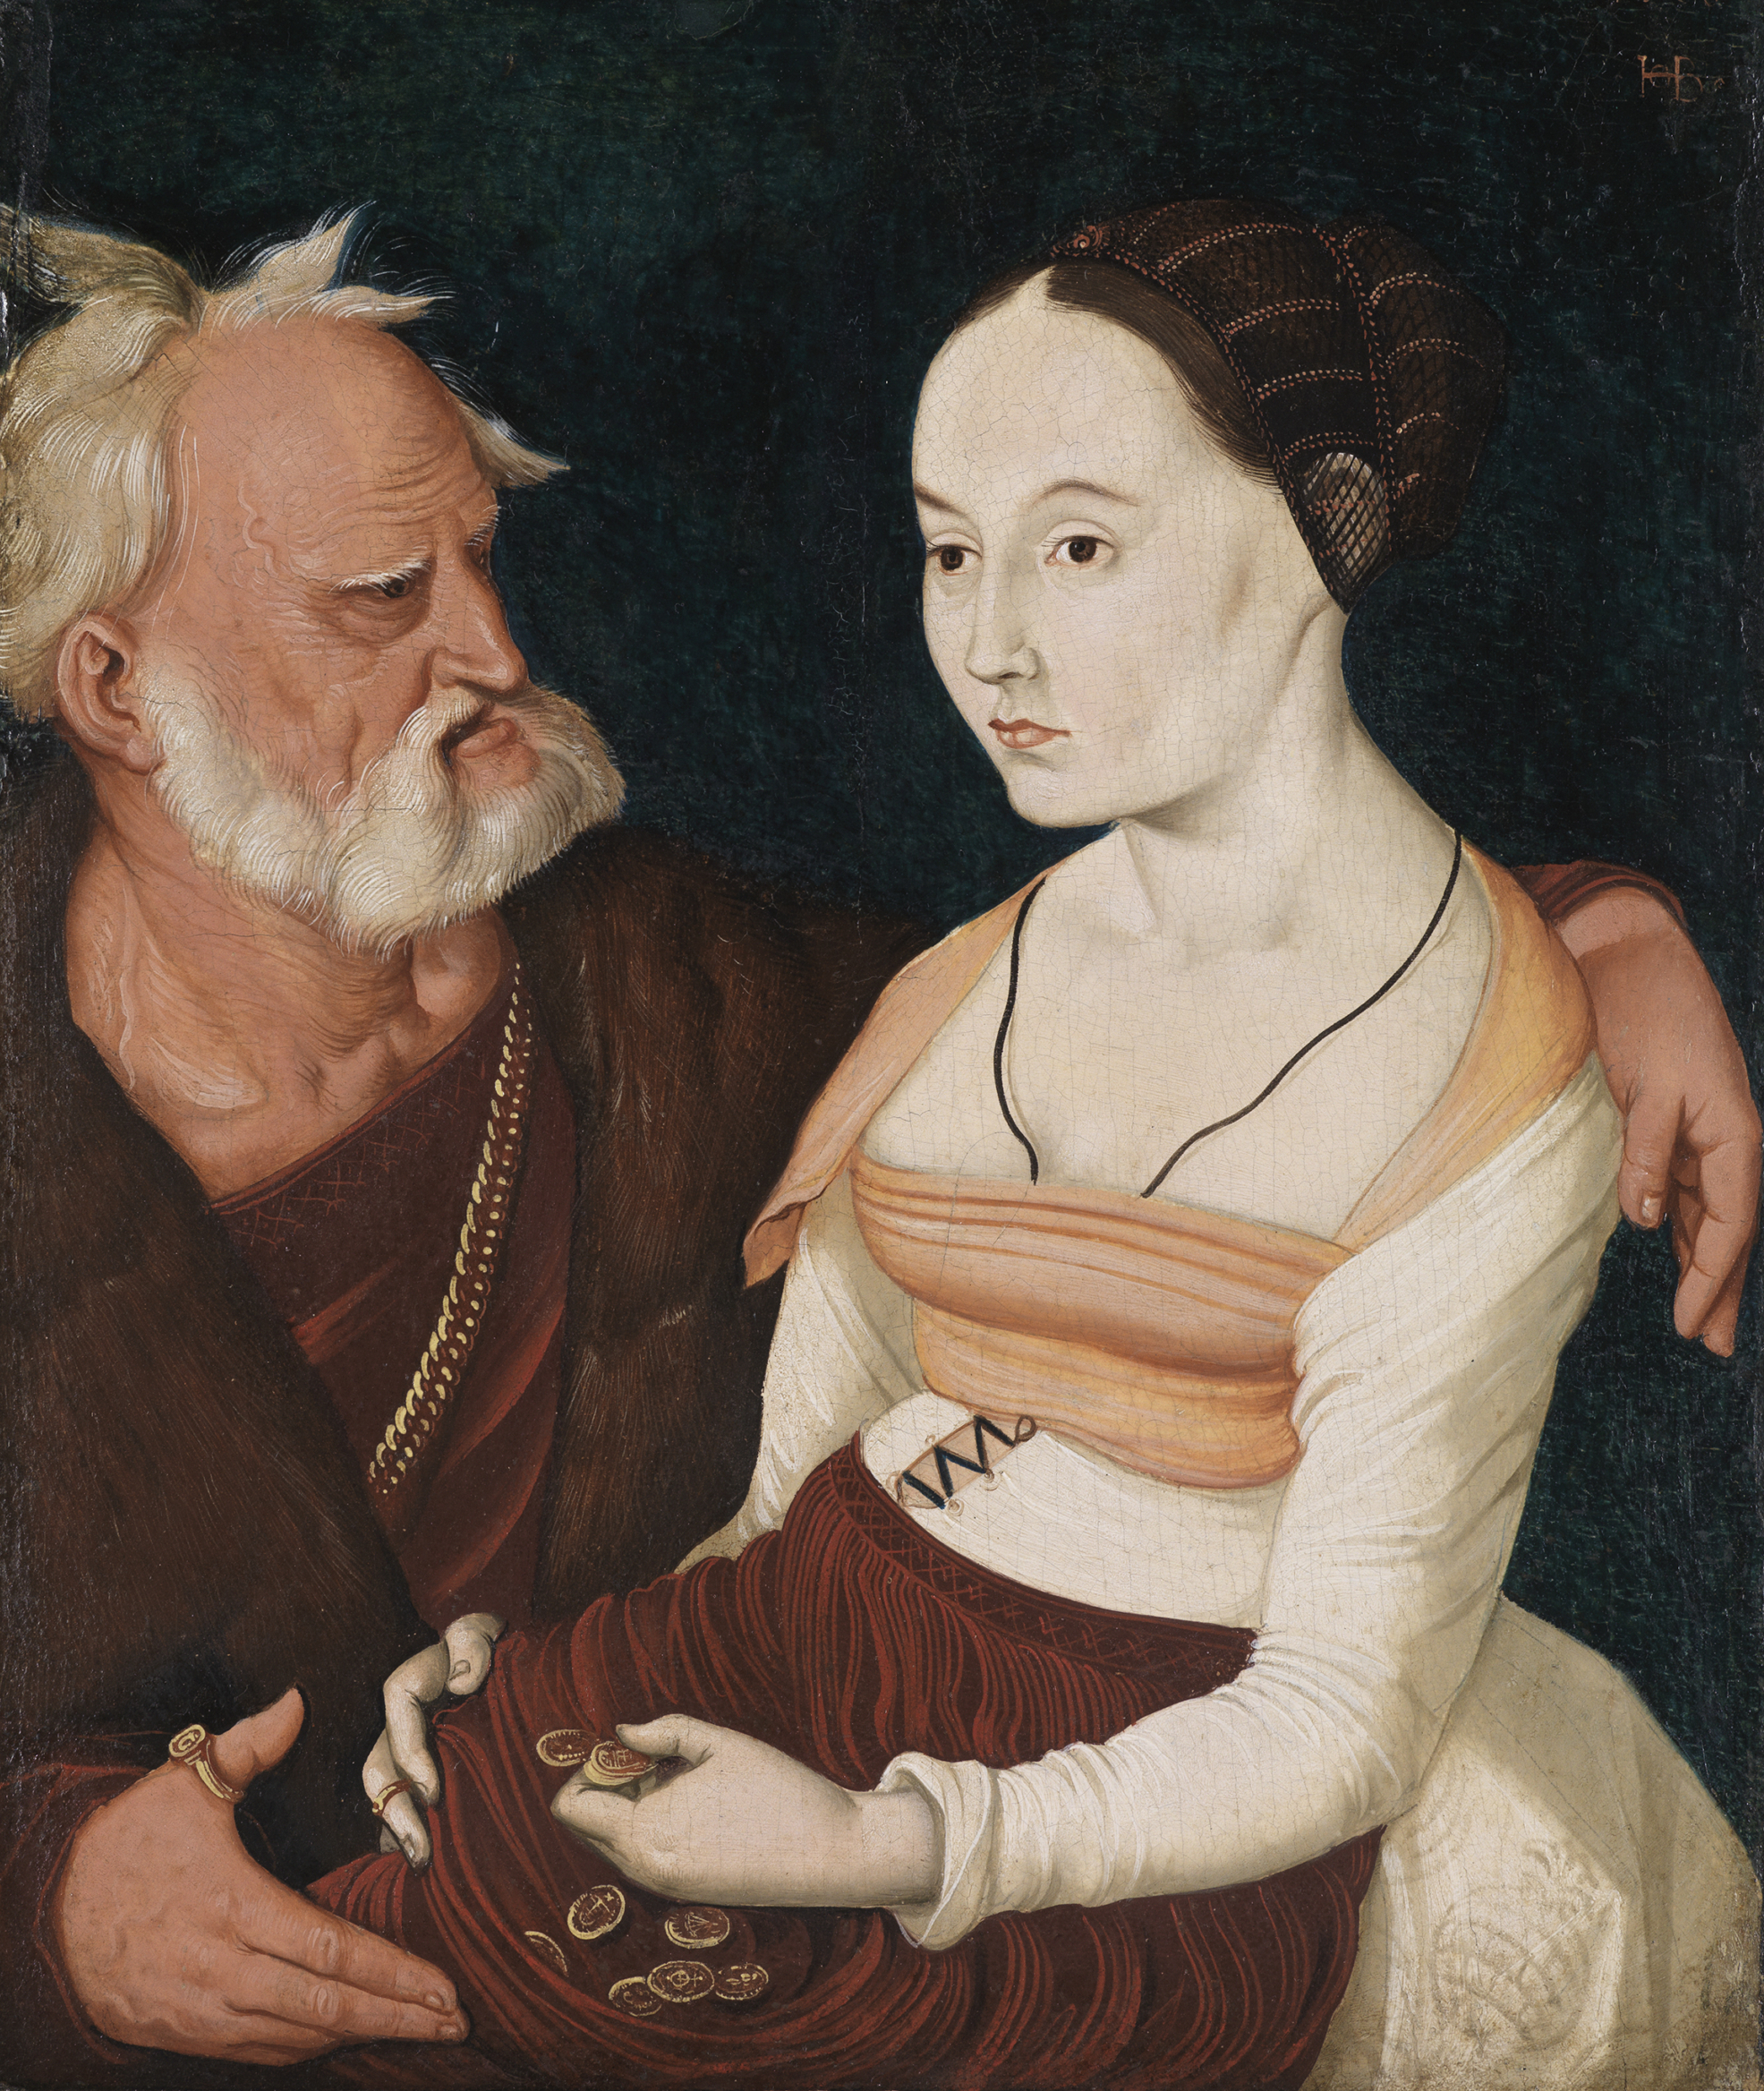 Das Gemälde zeigt eine junge Frau und einen älteren Mann - ein ungleiches Liebespaar.